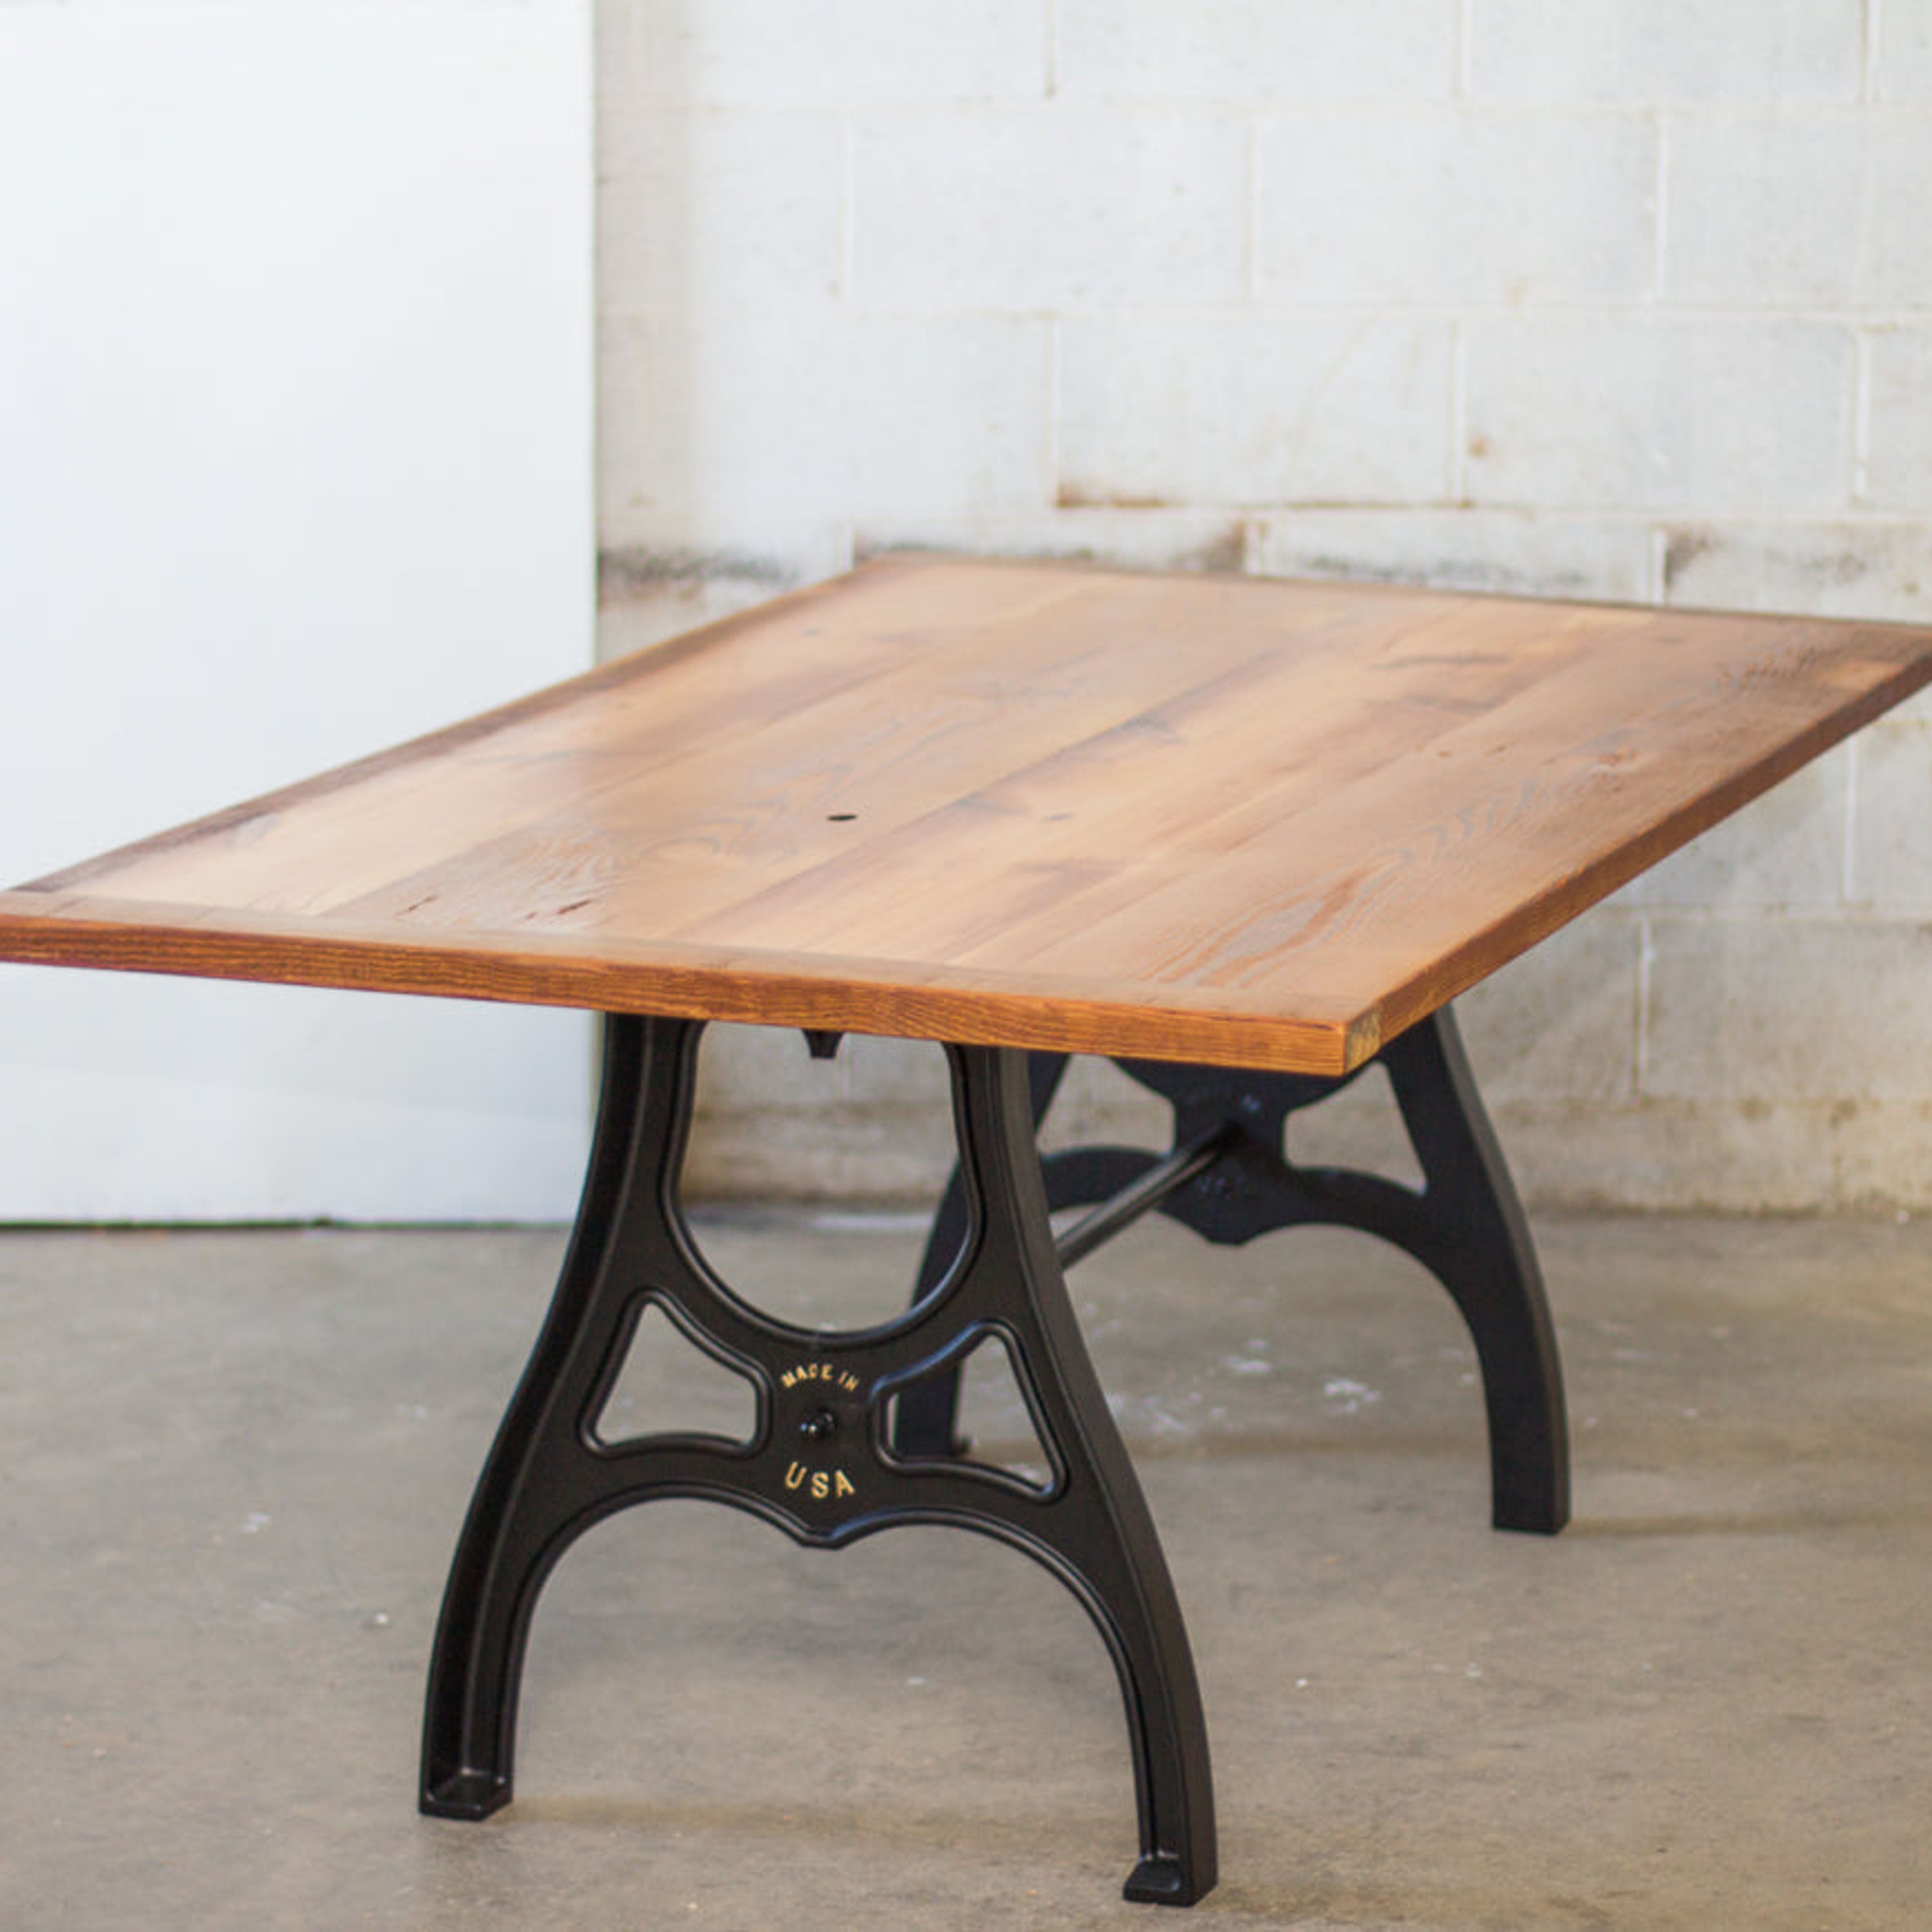 Table | Industrial Farm Table